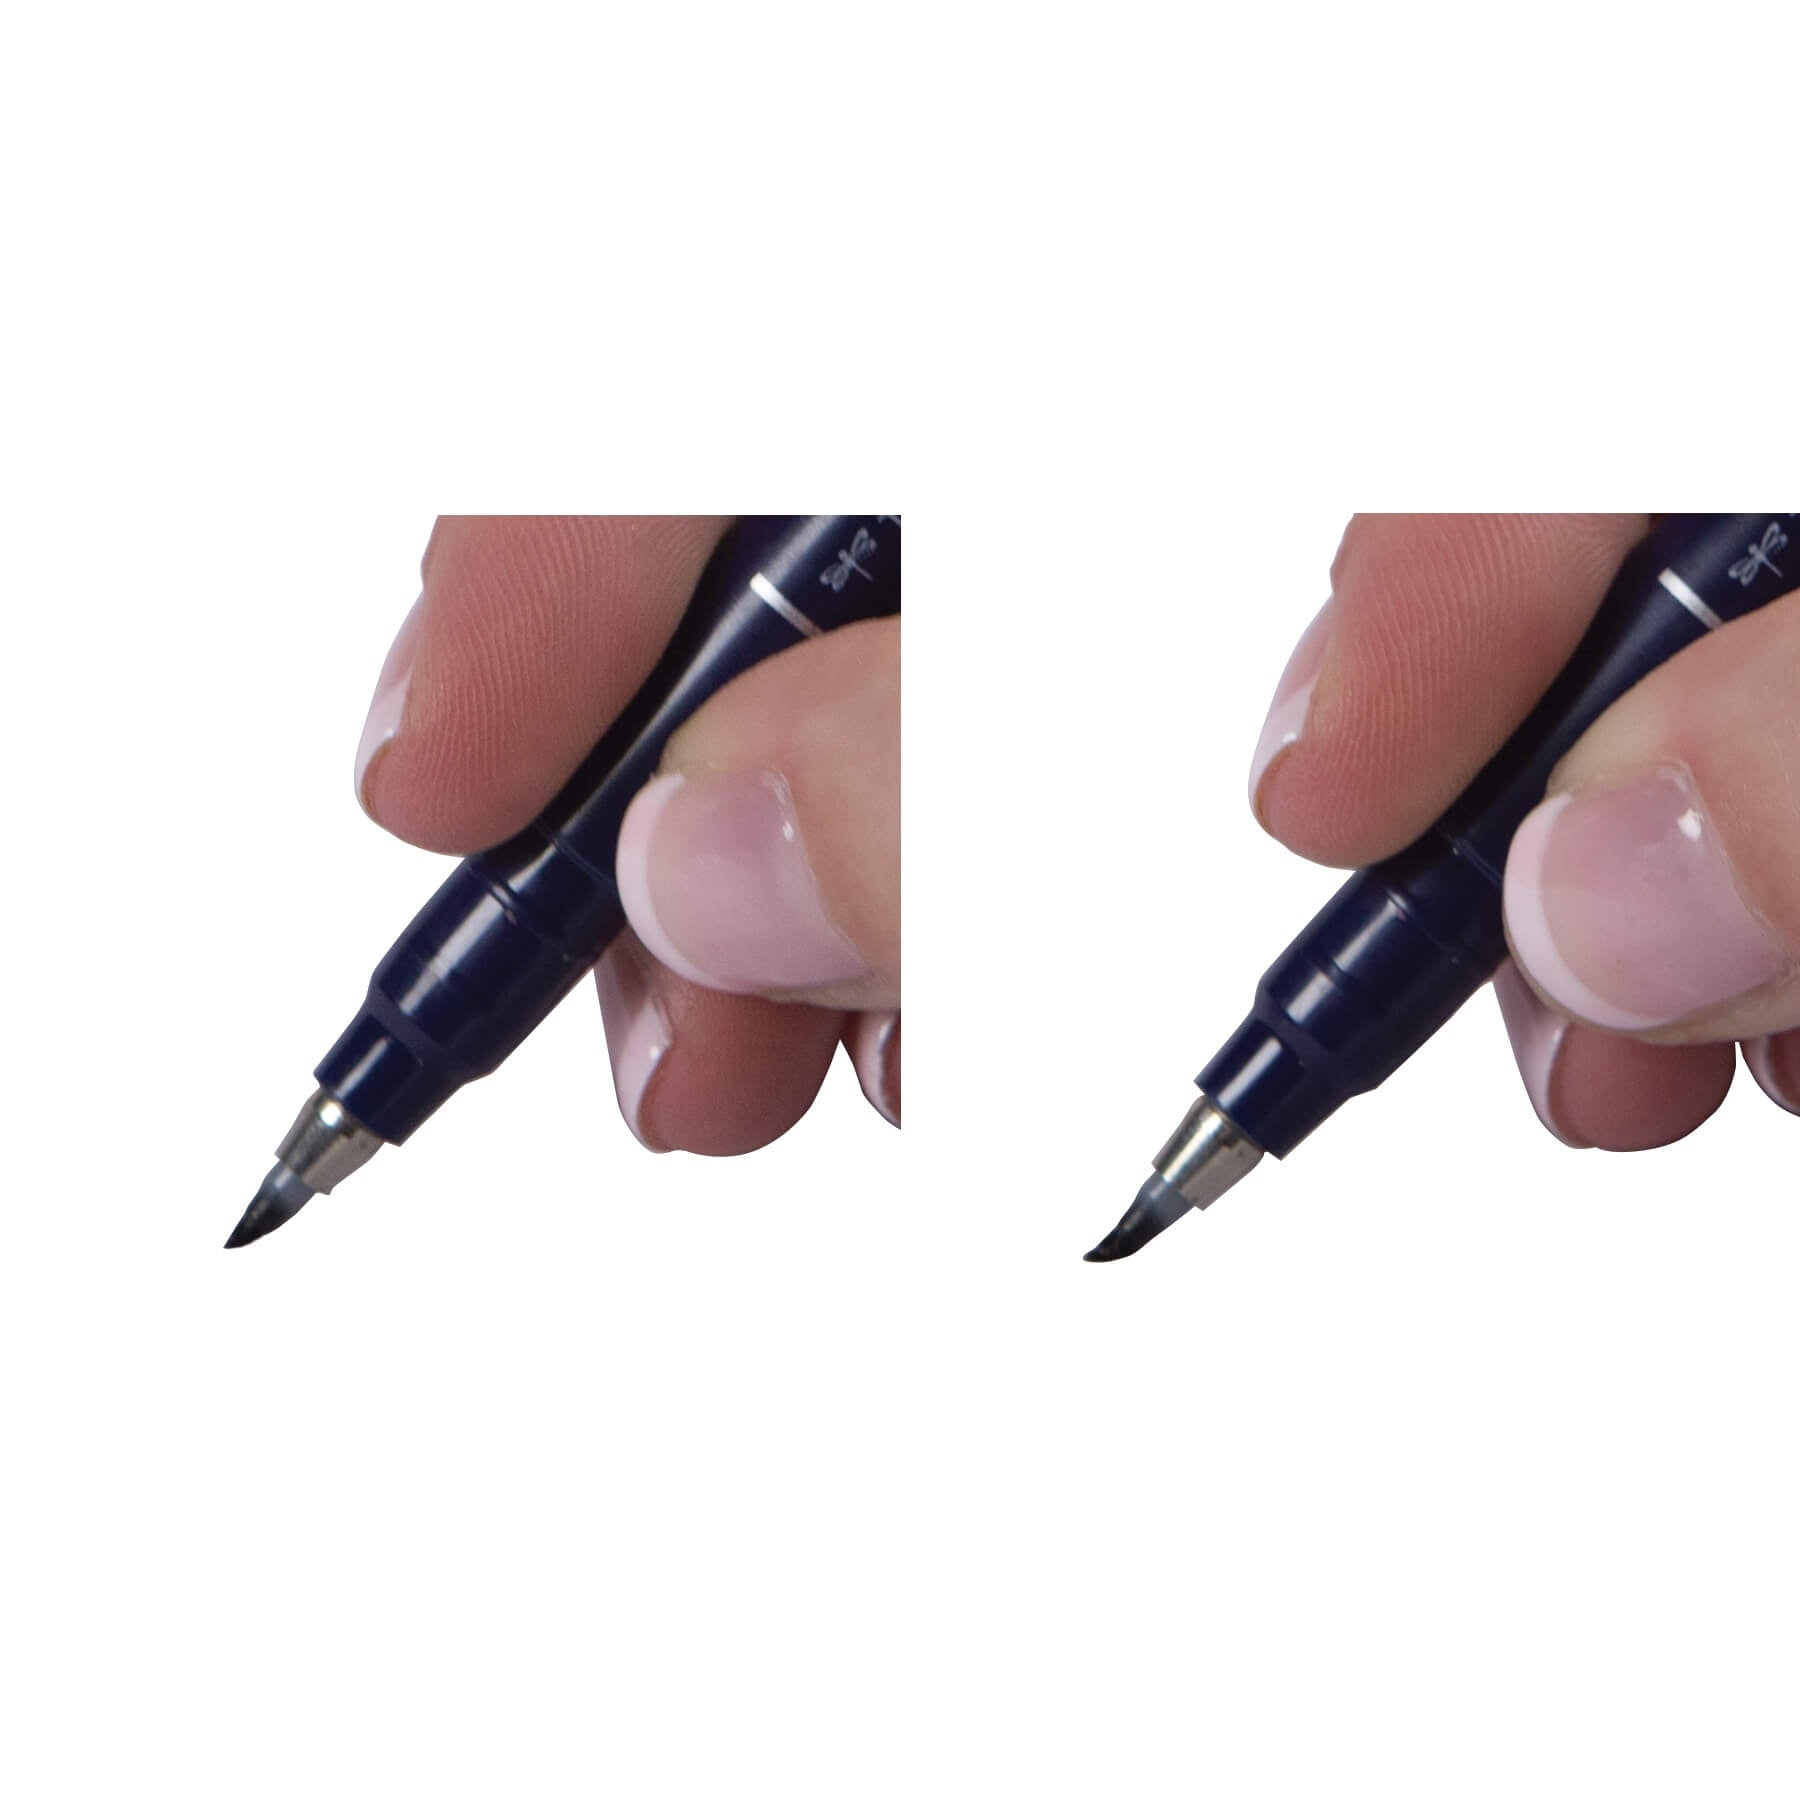 Tombow Fudenosuke Hard Brush Pen Black - Tip brush on paper